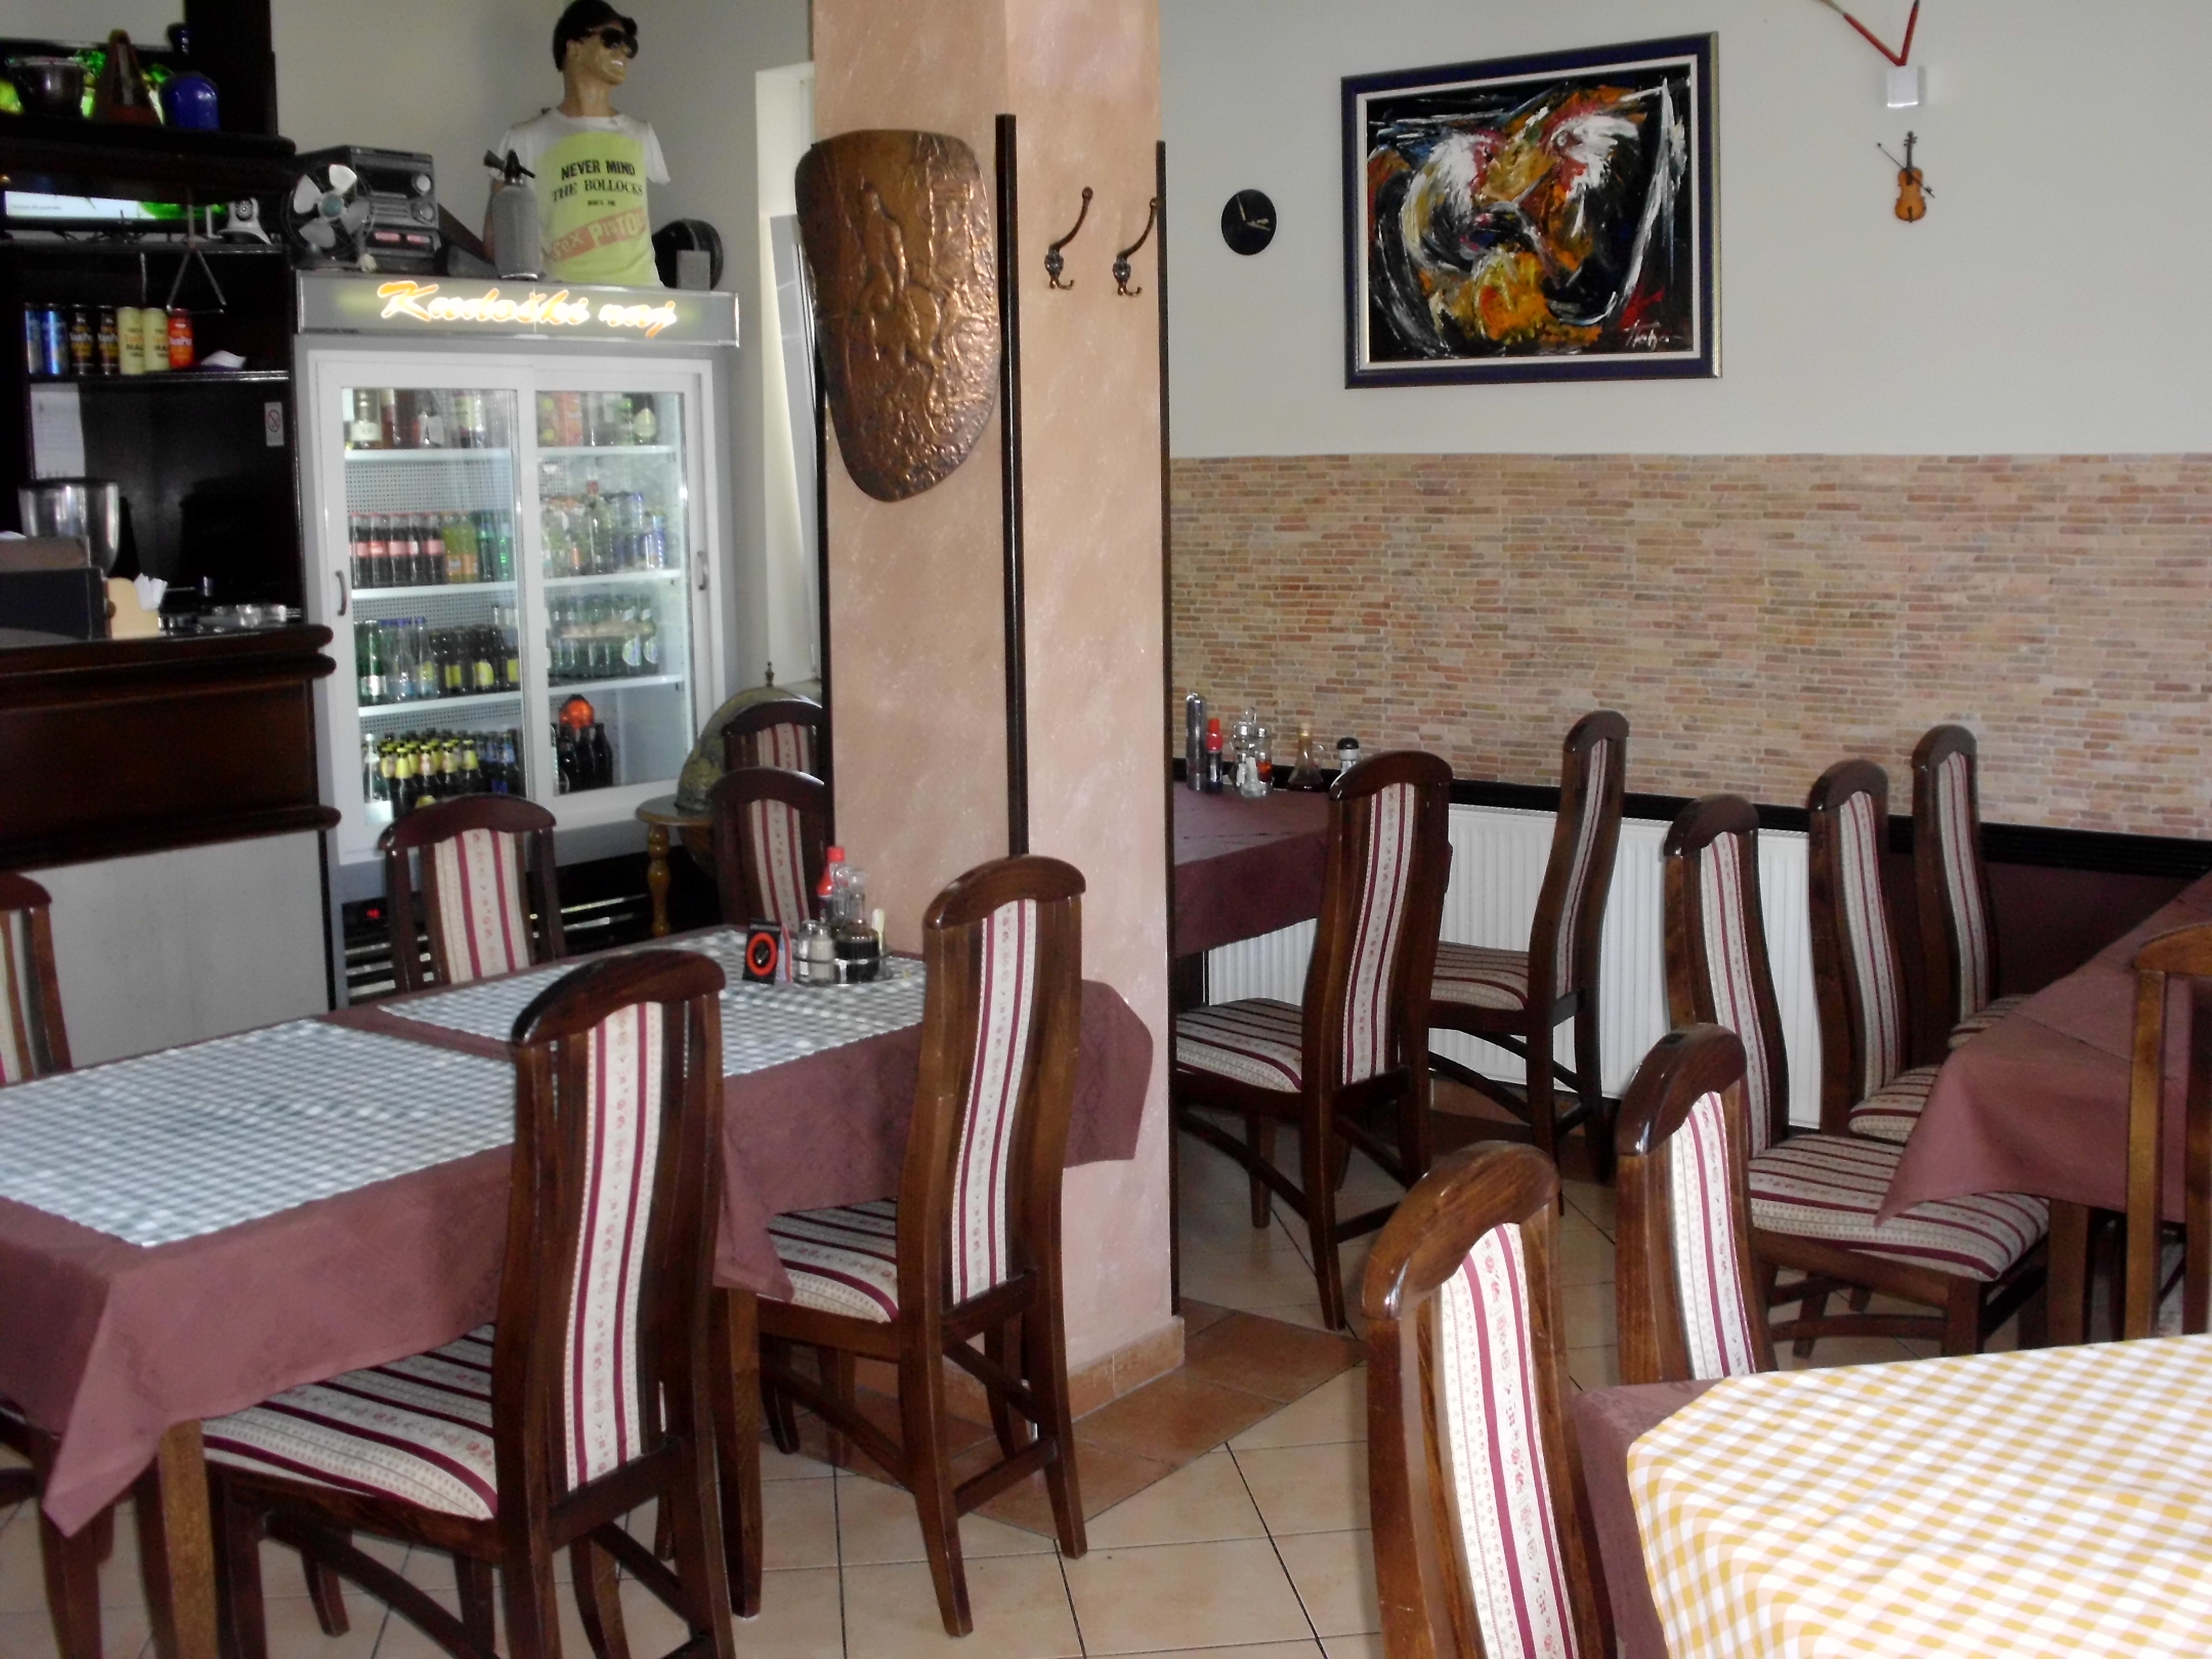 Restoran “Kudoški raj”